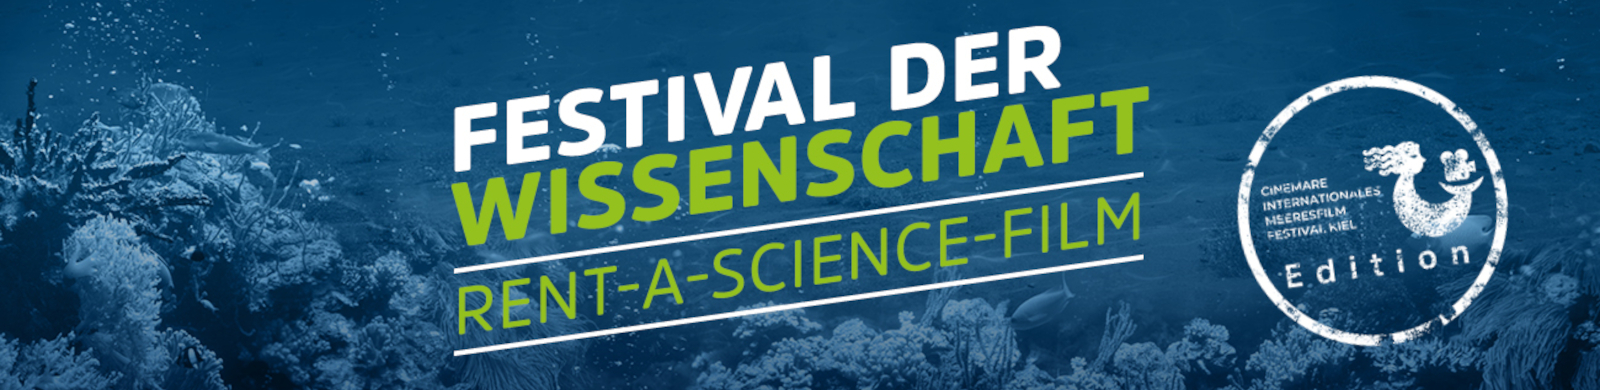 Schriftzug: Festival der Wissenschaft Rent a Science-Film